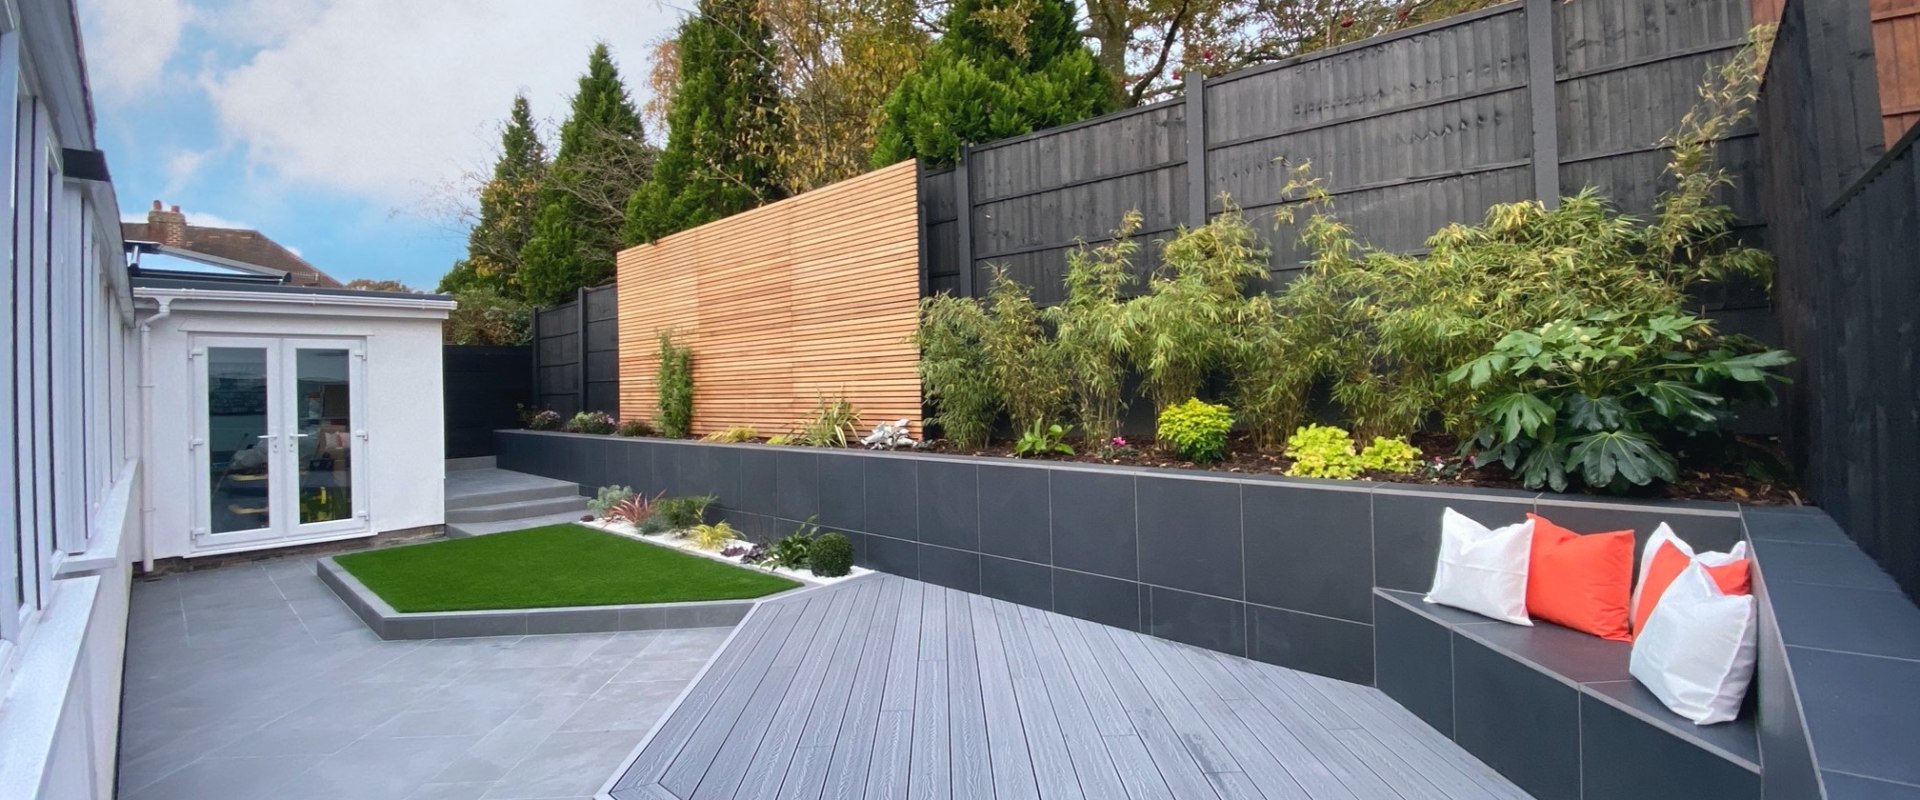 Creating a Functional Garden: Transform Your Outdoor Space